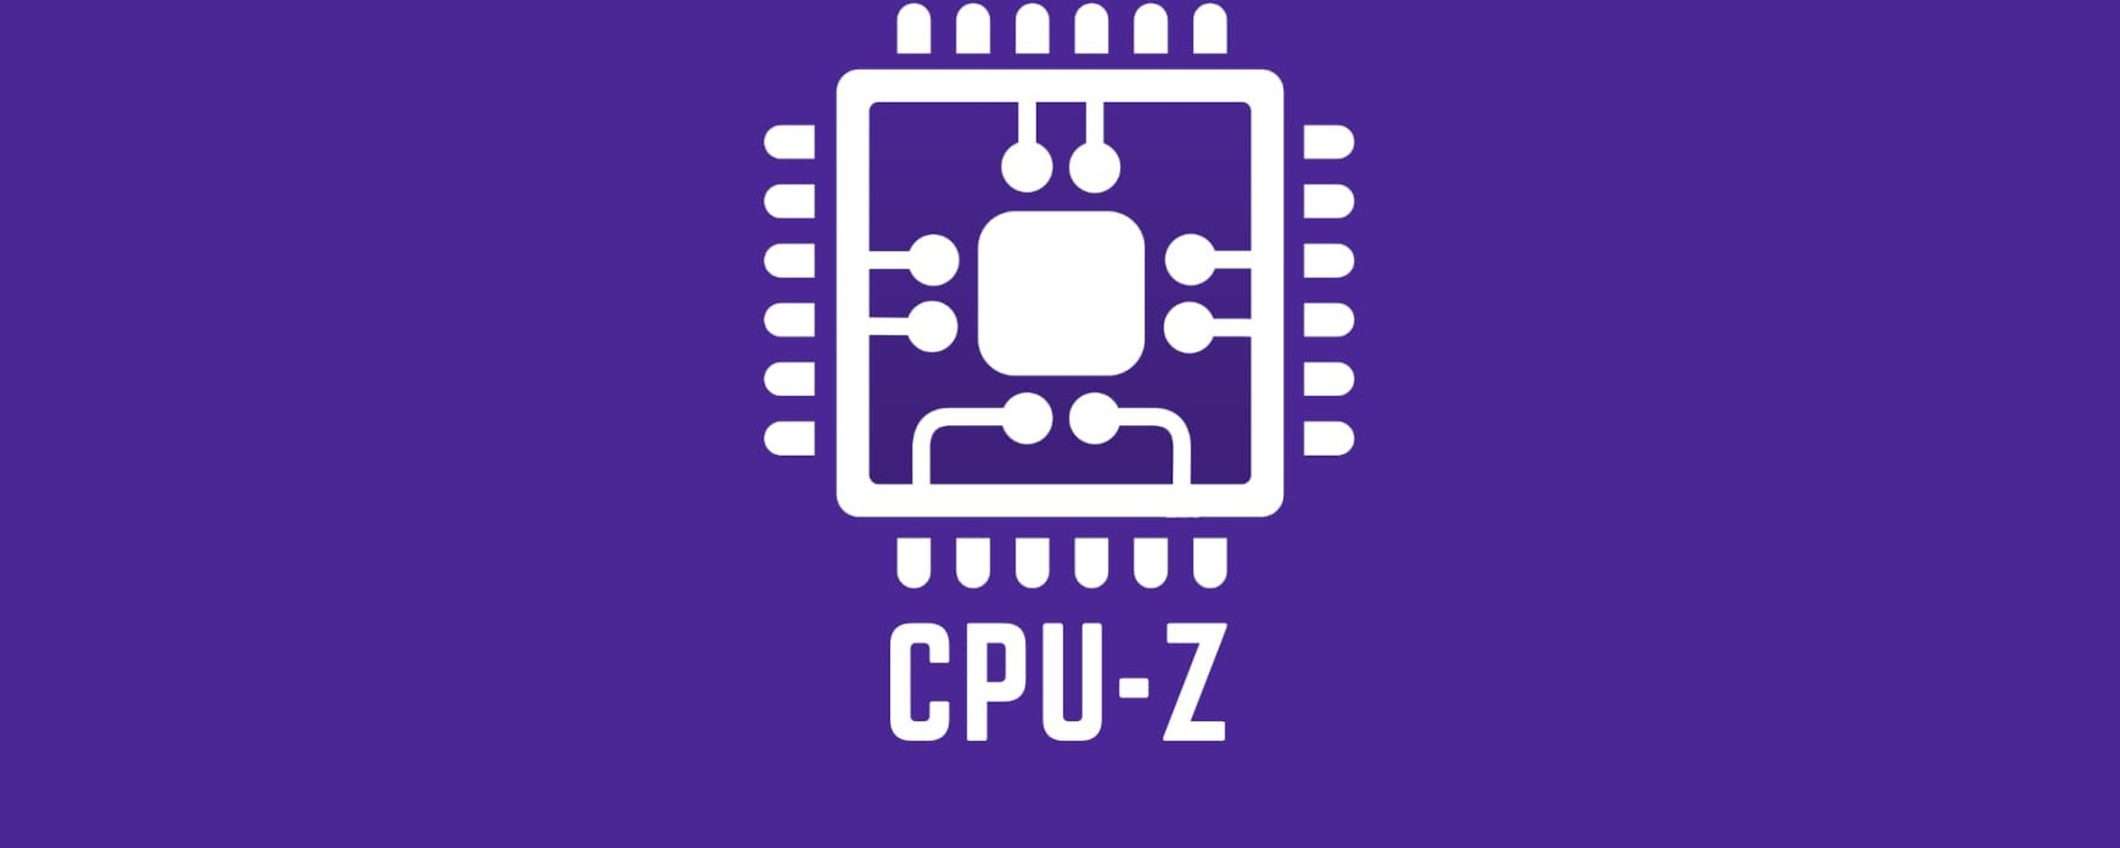 Google pubblicizza la versione infetta di CPU-Z